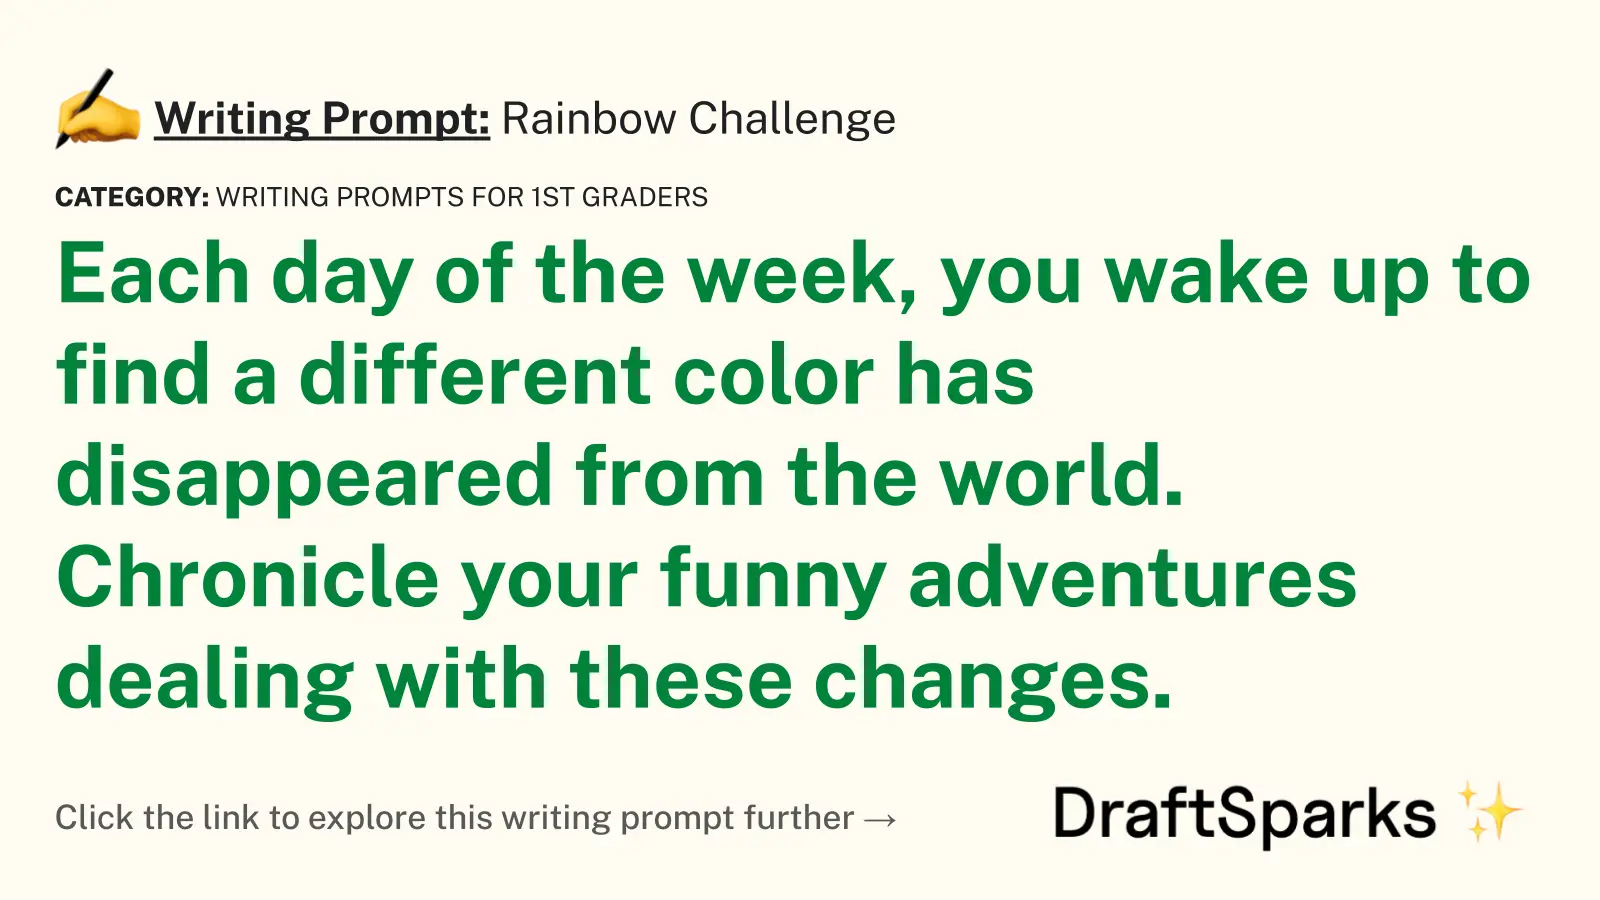 Rainbow Challenge